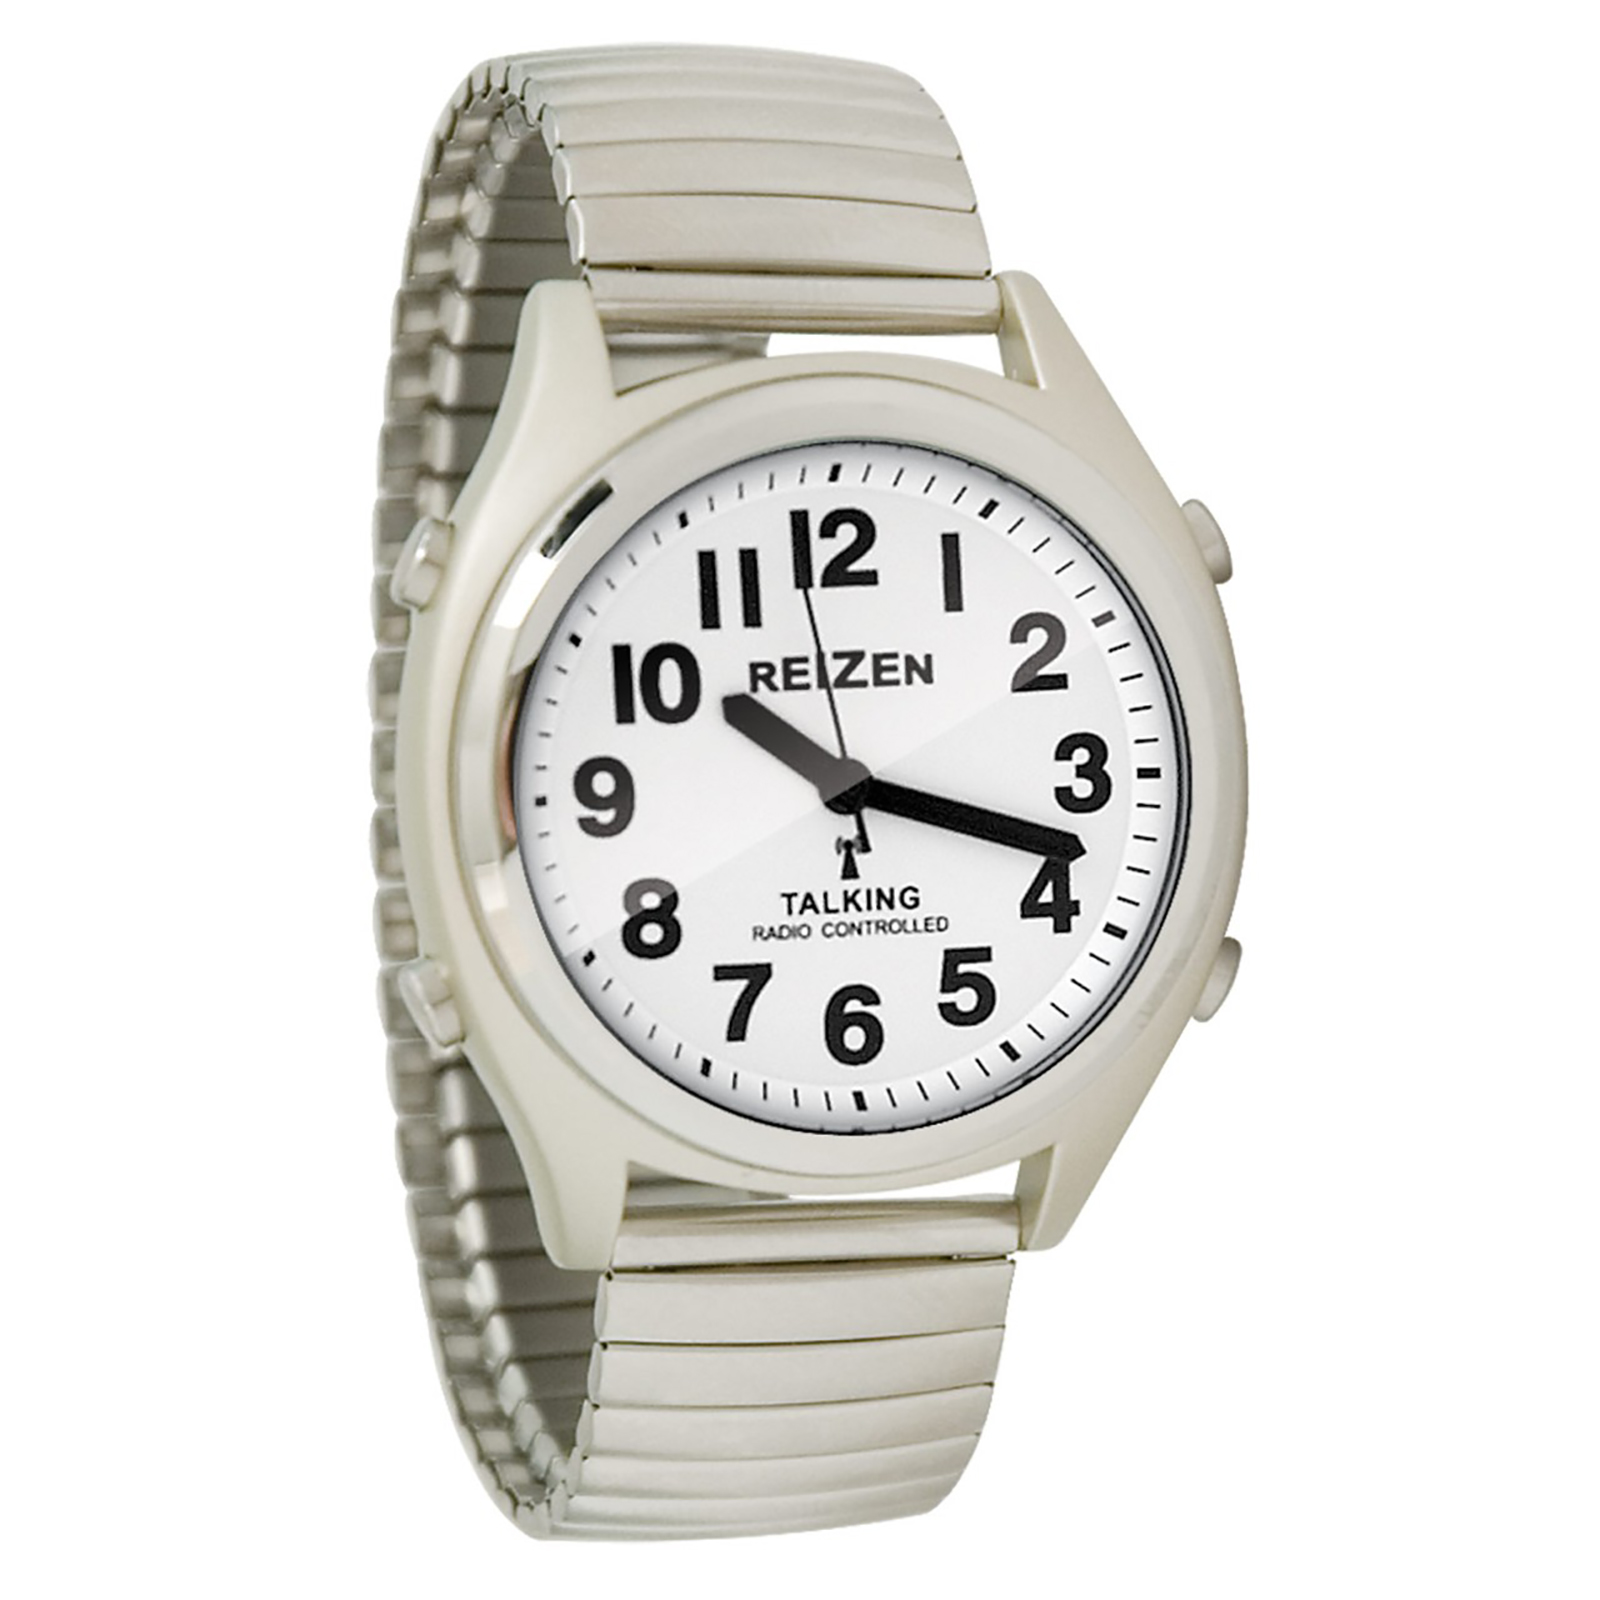 MaxiAids 6505 Reizen Unisex Talking Atomic Watch - Silver